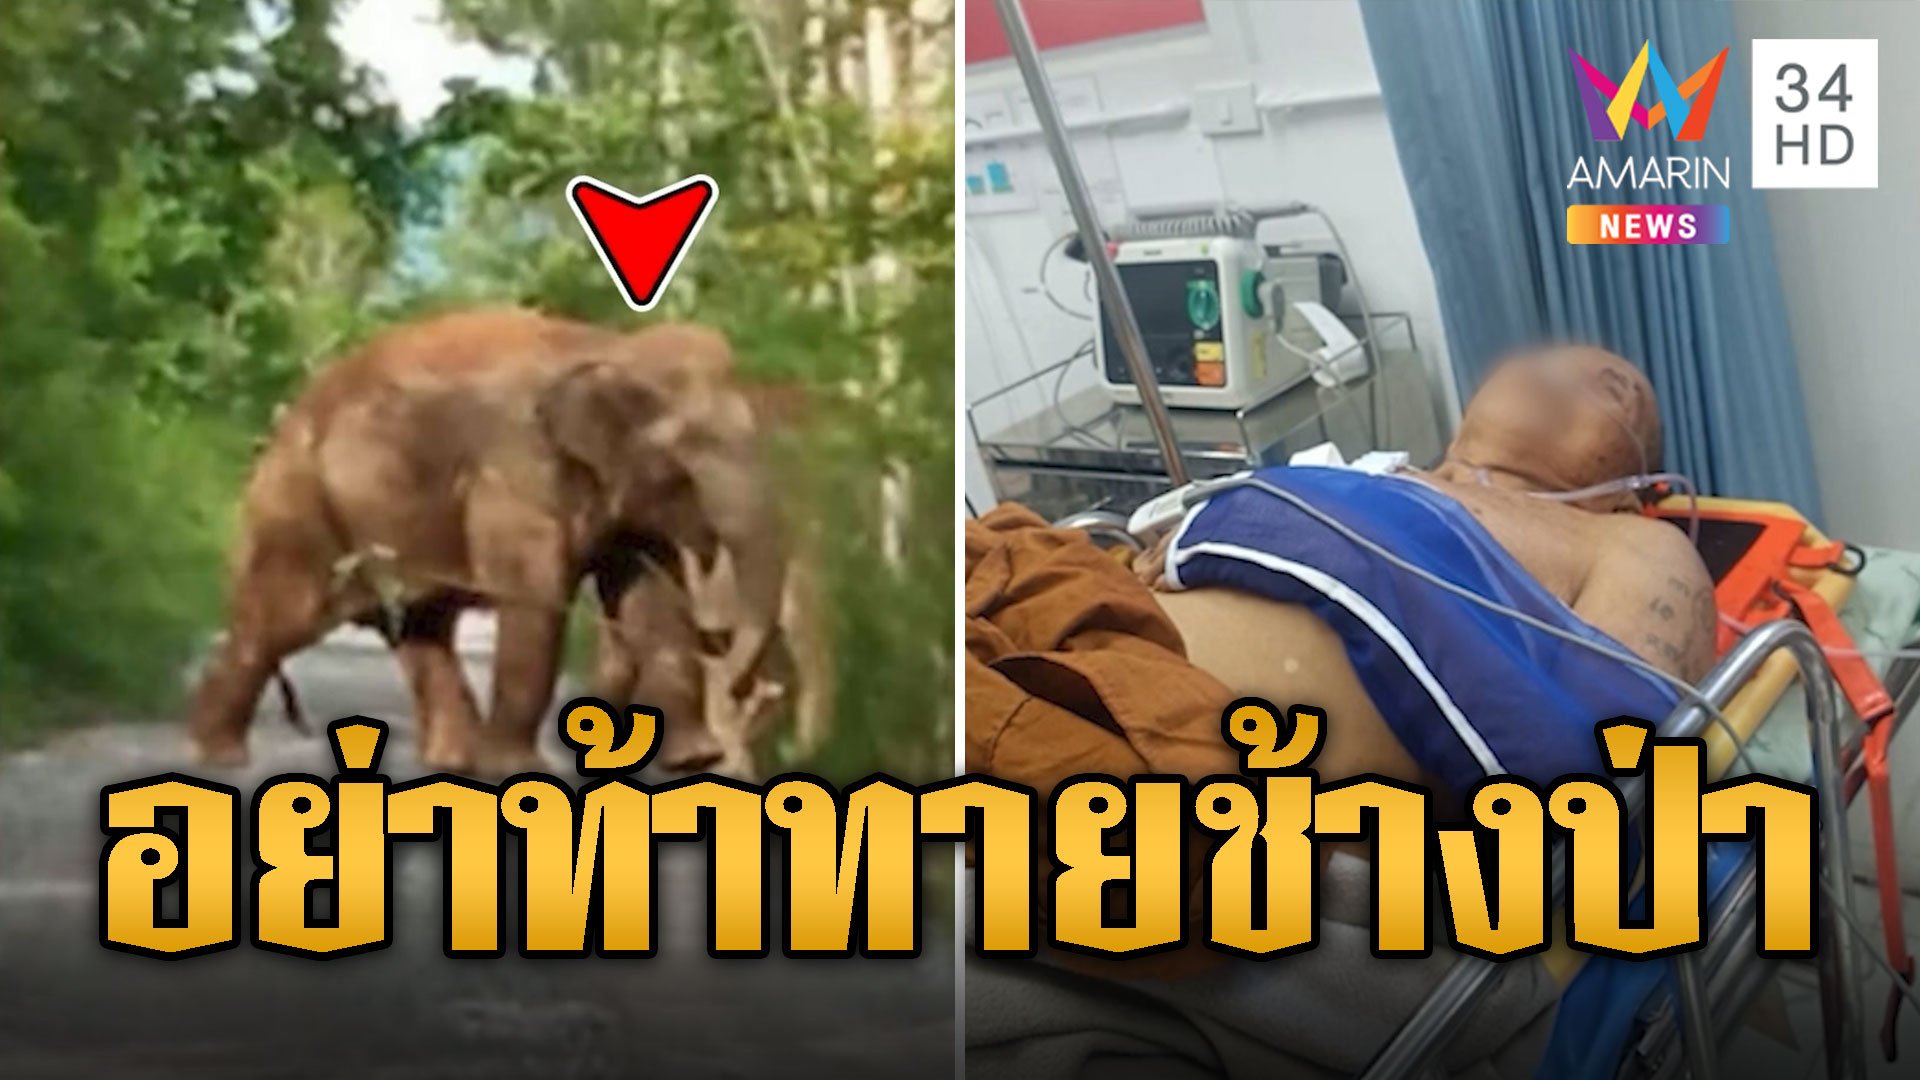 ช้างป่าบุกทำร้ายพระถึงกุฏิ หนีหัวซุกหัวซุนหลังท้าทายไว้  | ข่าวอรุณอมรินทร์ | 7 มิ.ย. 67 | AMARIN TVHD34